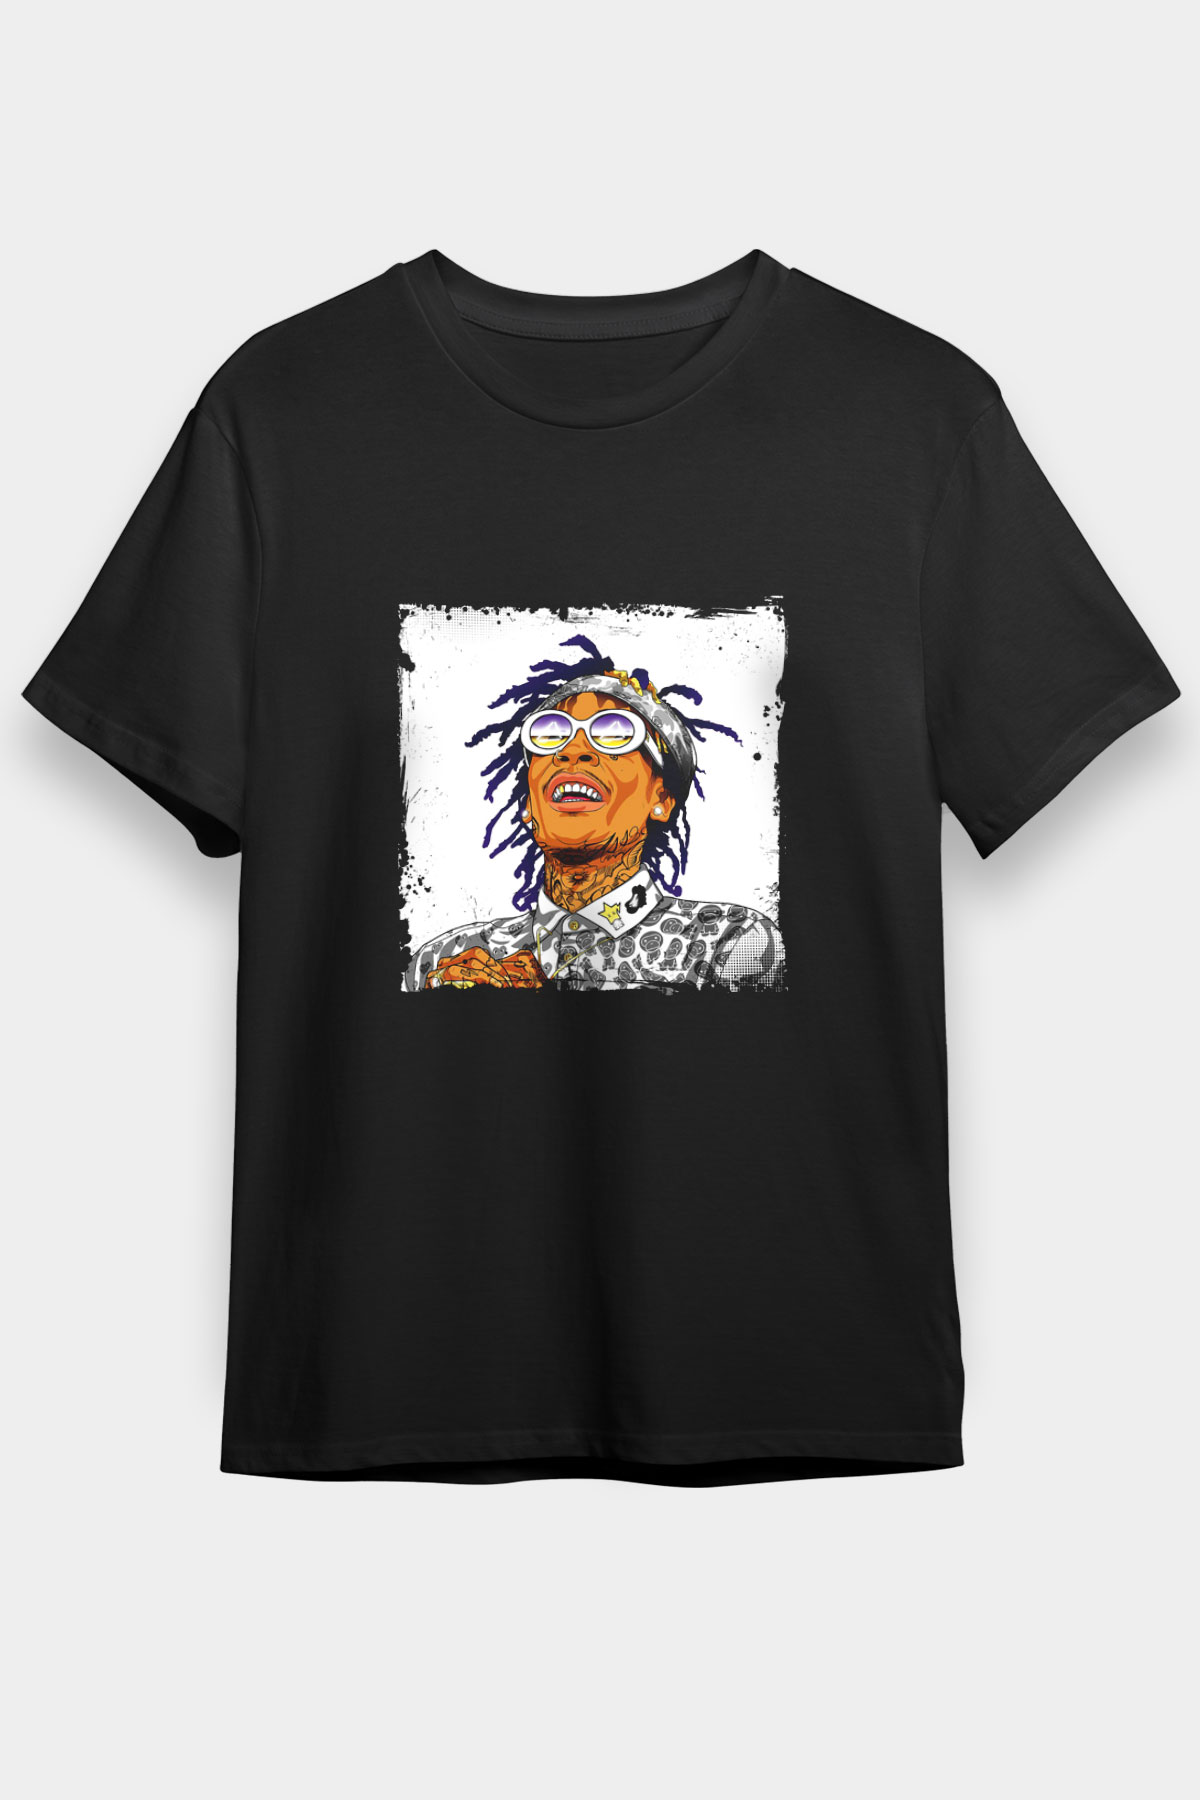 Wiz Khalifa T shirt,Hip Hop,Rap Tshirt 09/